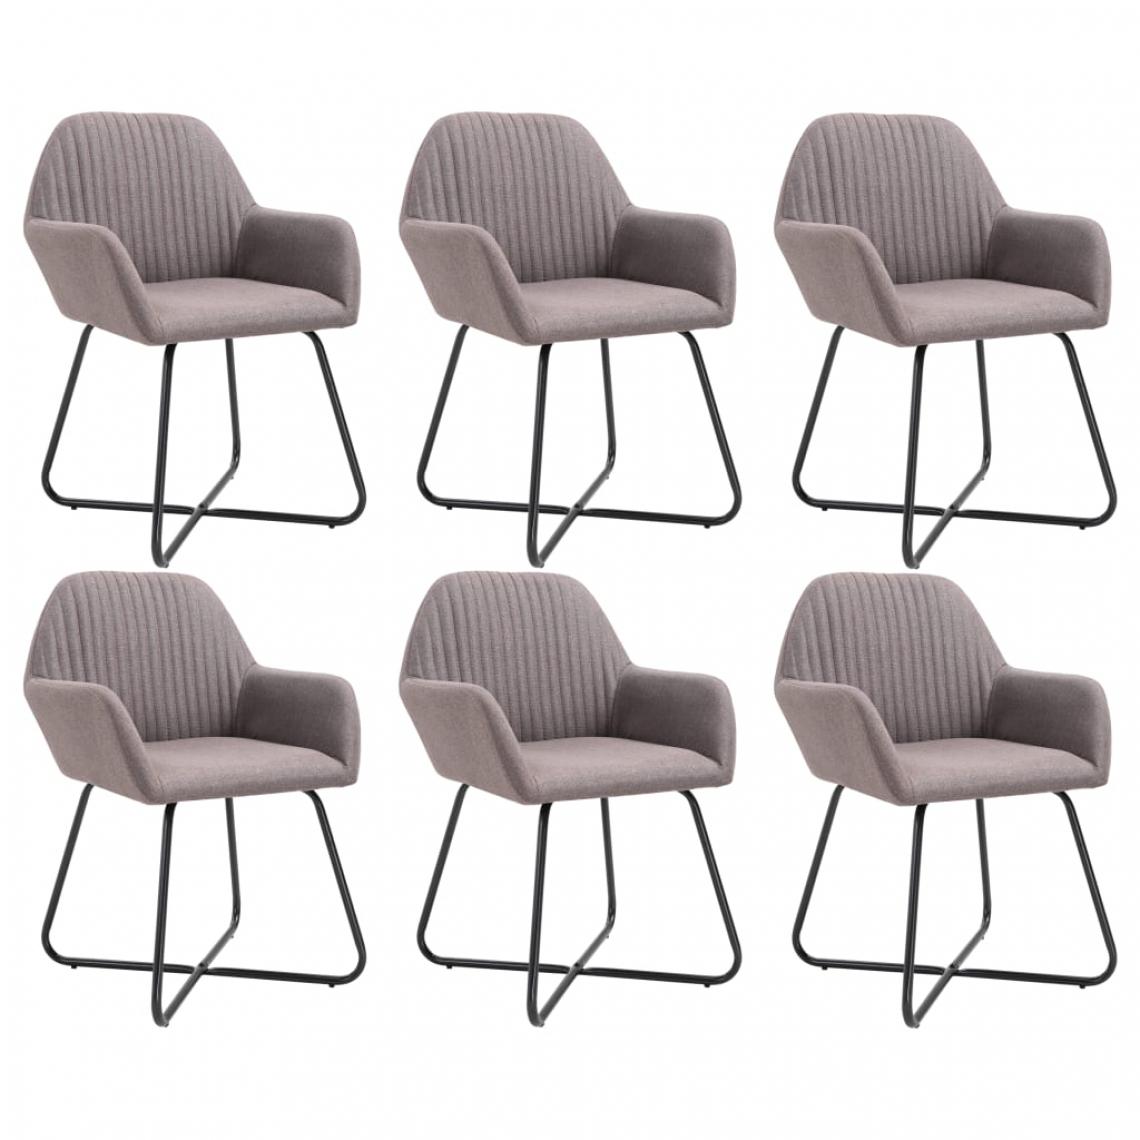 Icaverne - Superbe Fauteuils et chaises gamme Bakou Chaises de salle à manger 6 pcs Taupe Tissu - Chaises